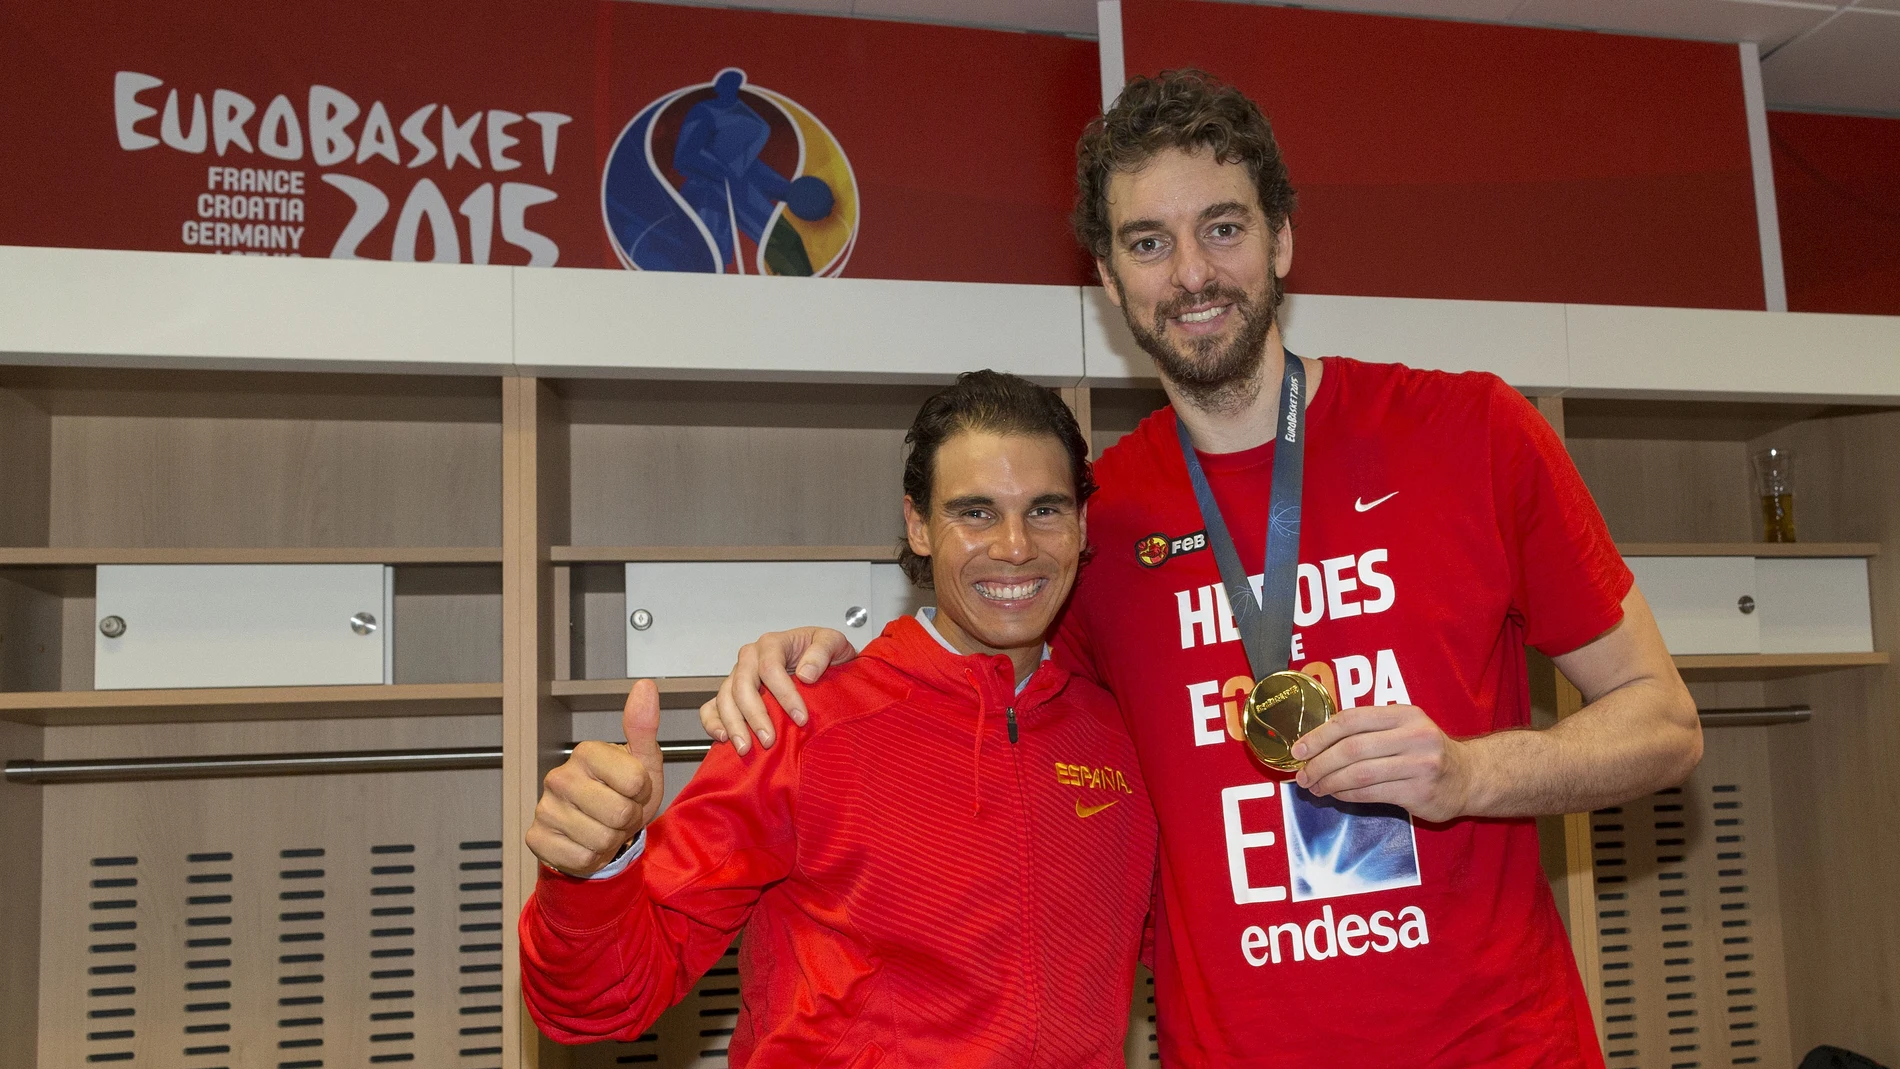 Varios.- Rafa Nadal y Pau Gasol se unen a Cruz Roja para intentar recaudar 11 millones entre los deportistas españoles